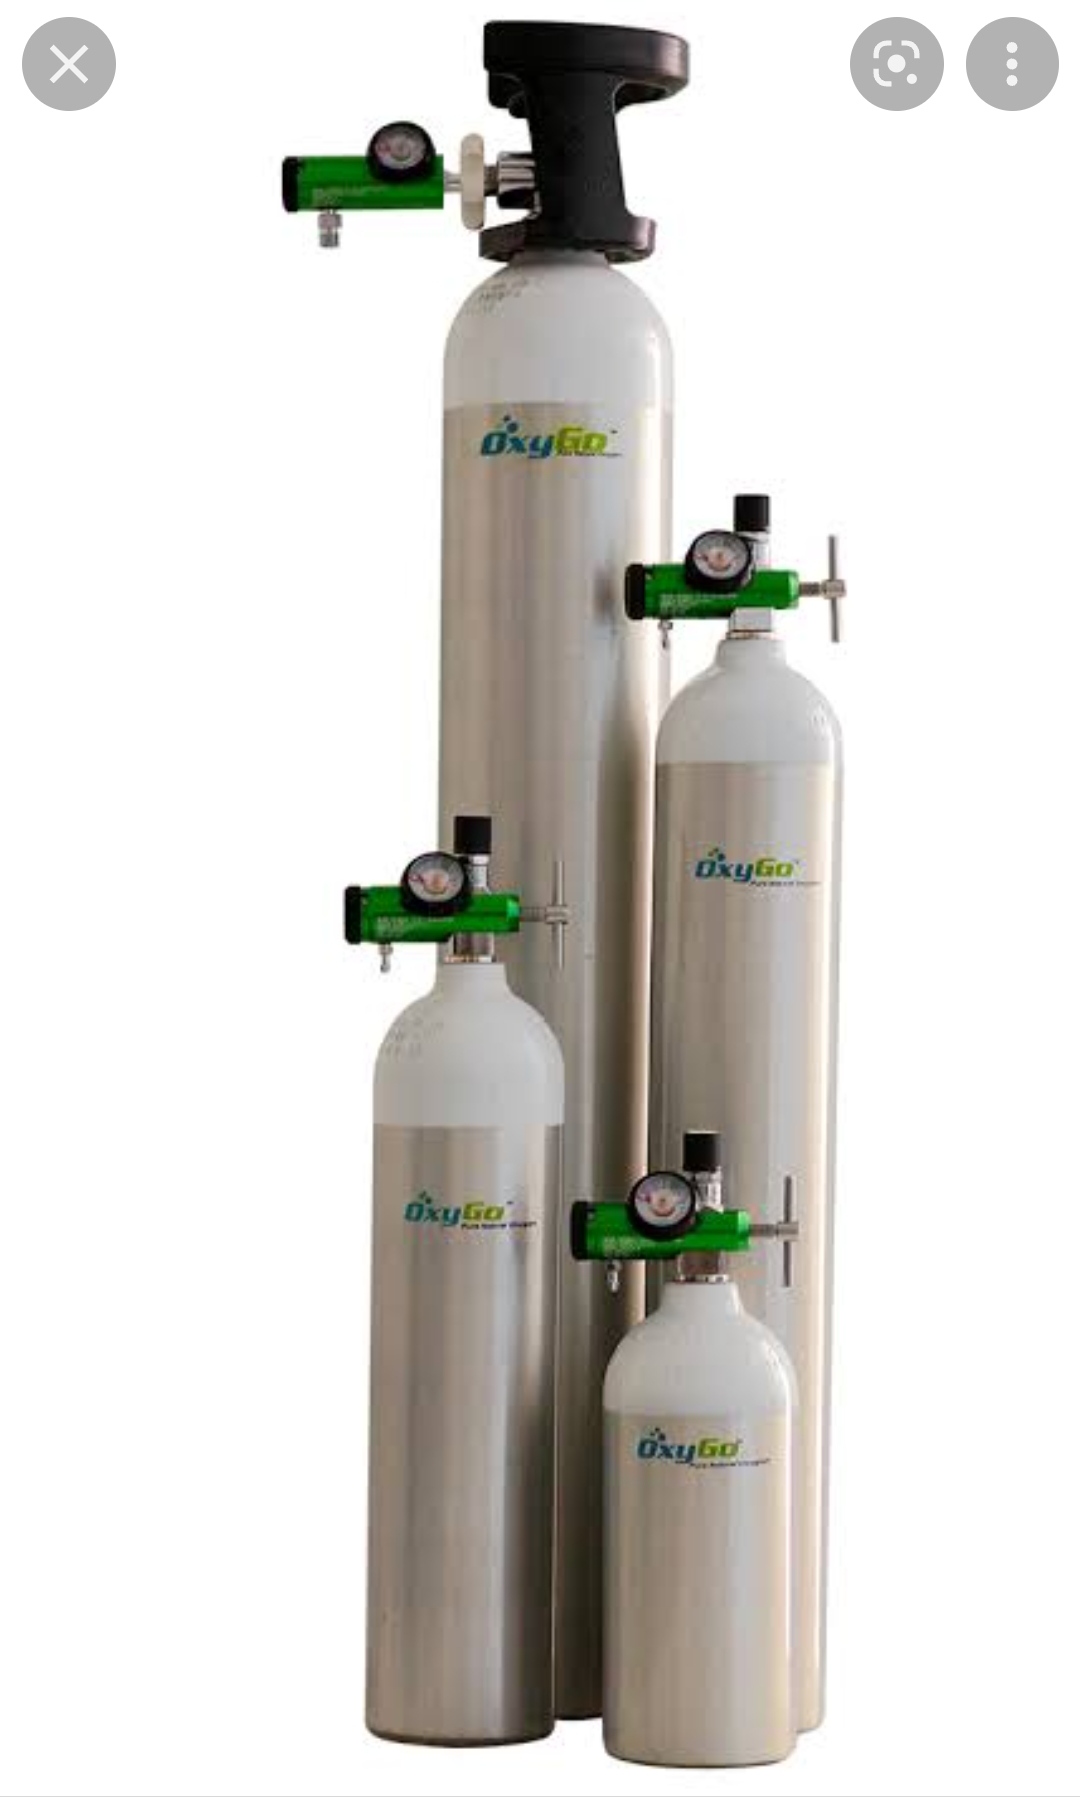 8 Liter Oxygen Cylinder For Sale 9810525762